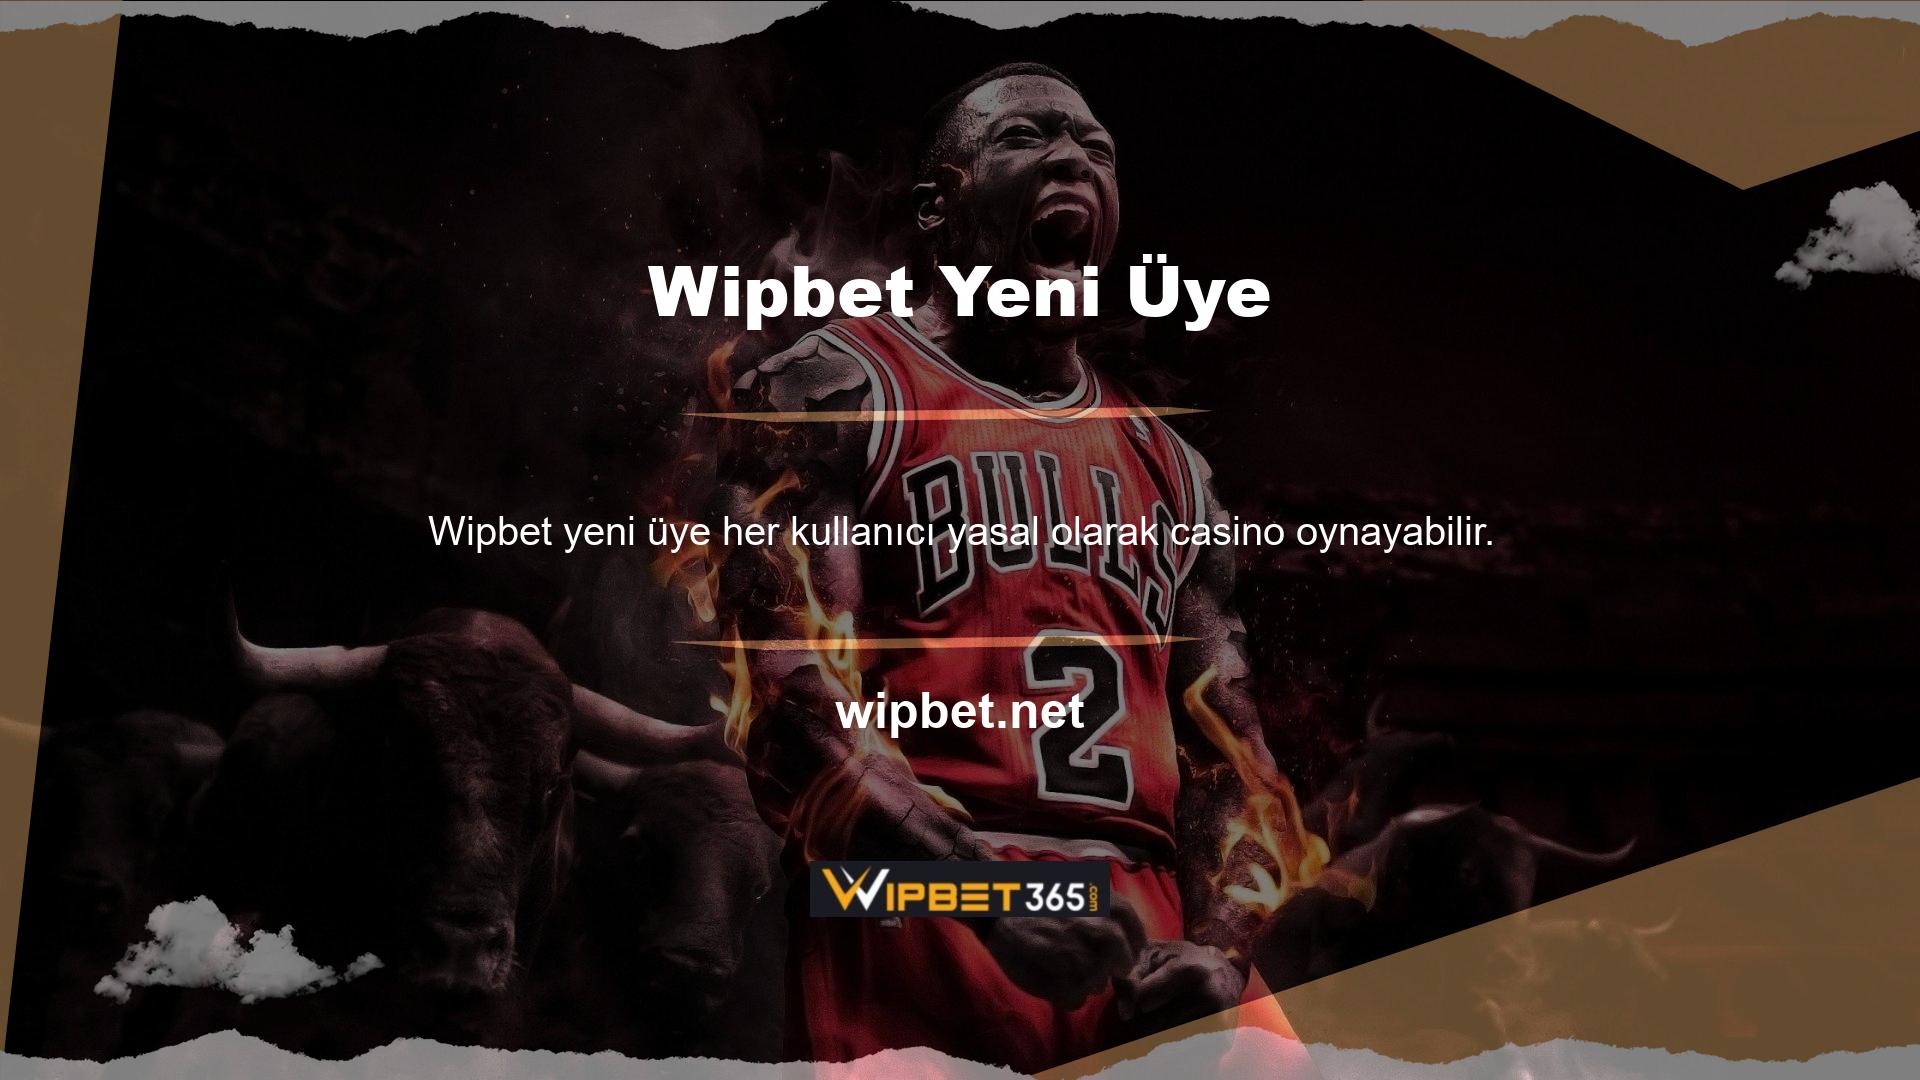 Wipbet çevrimiçi hizmetlerde ve çeşitli oyunlarda öne çıkıyor